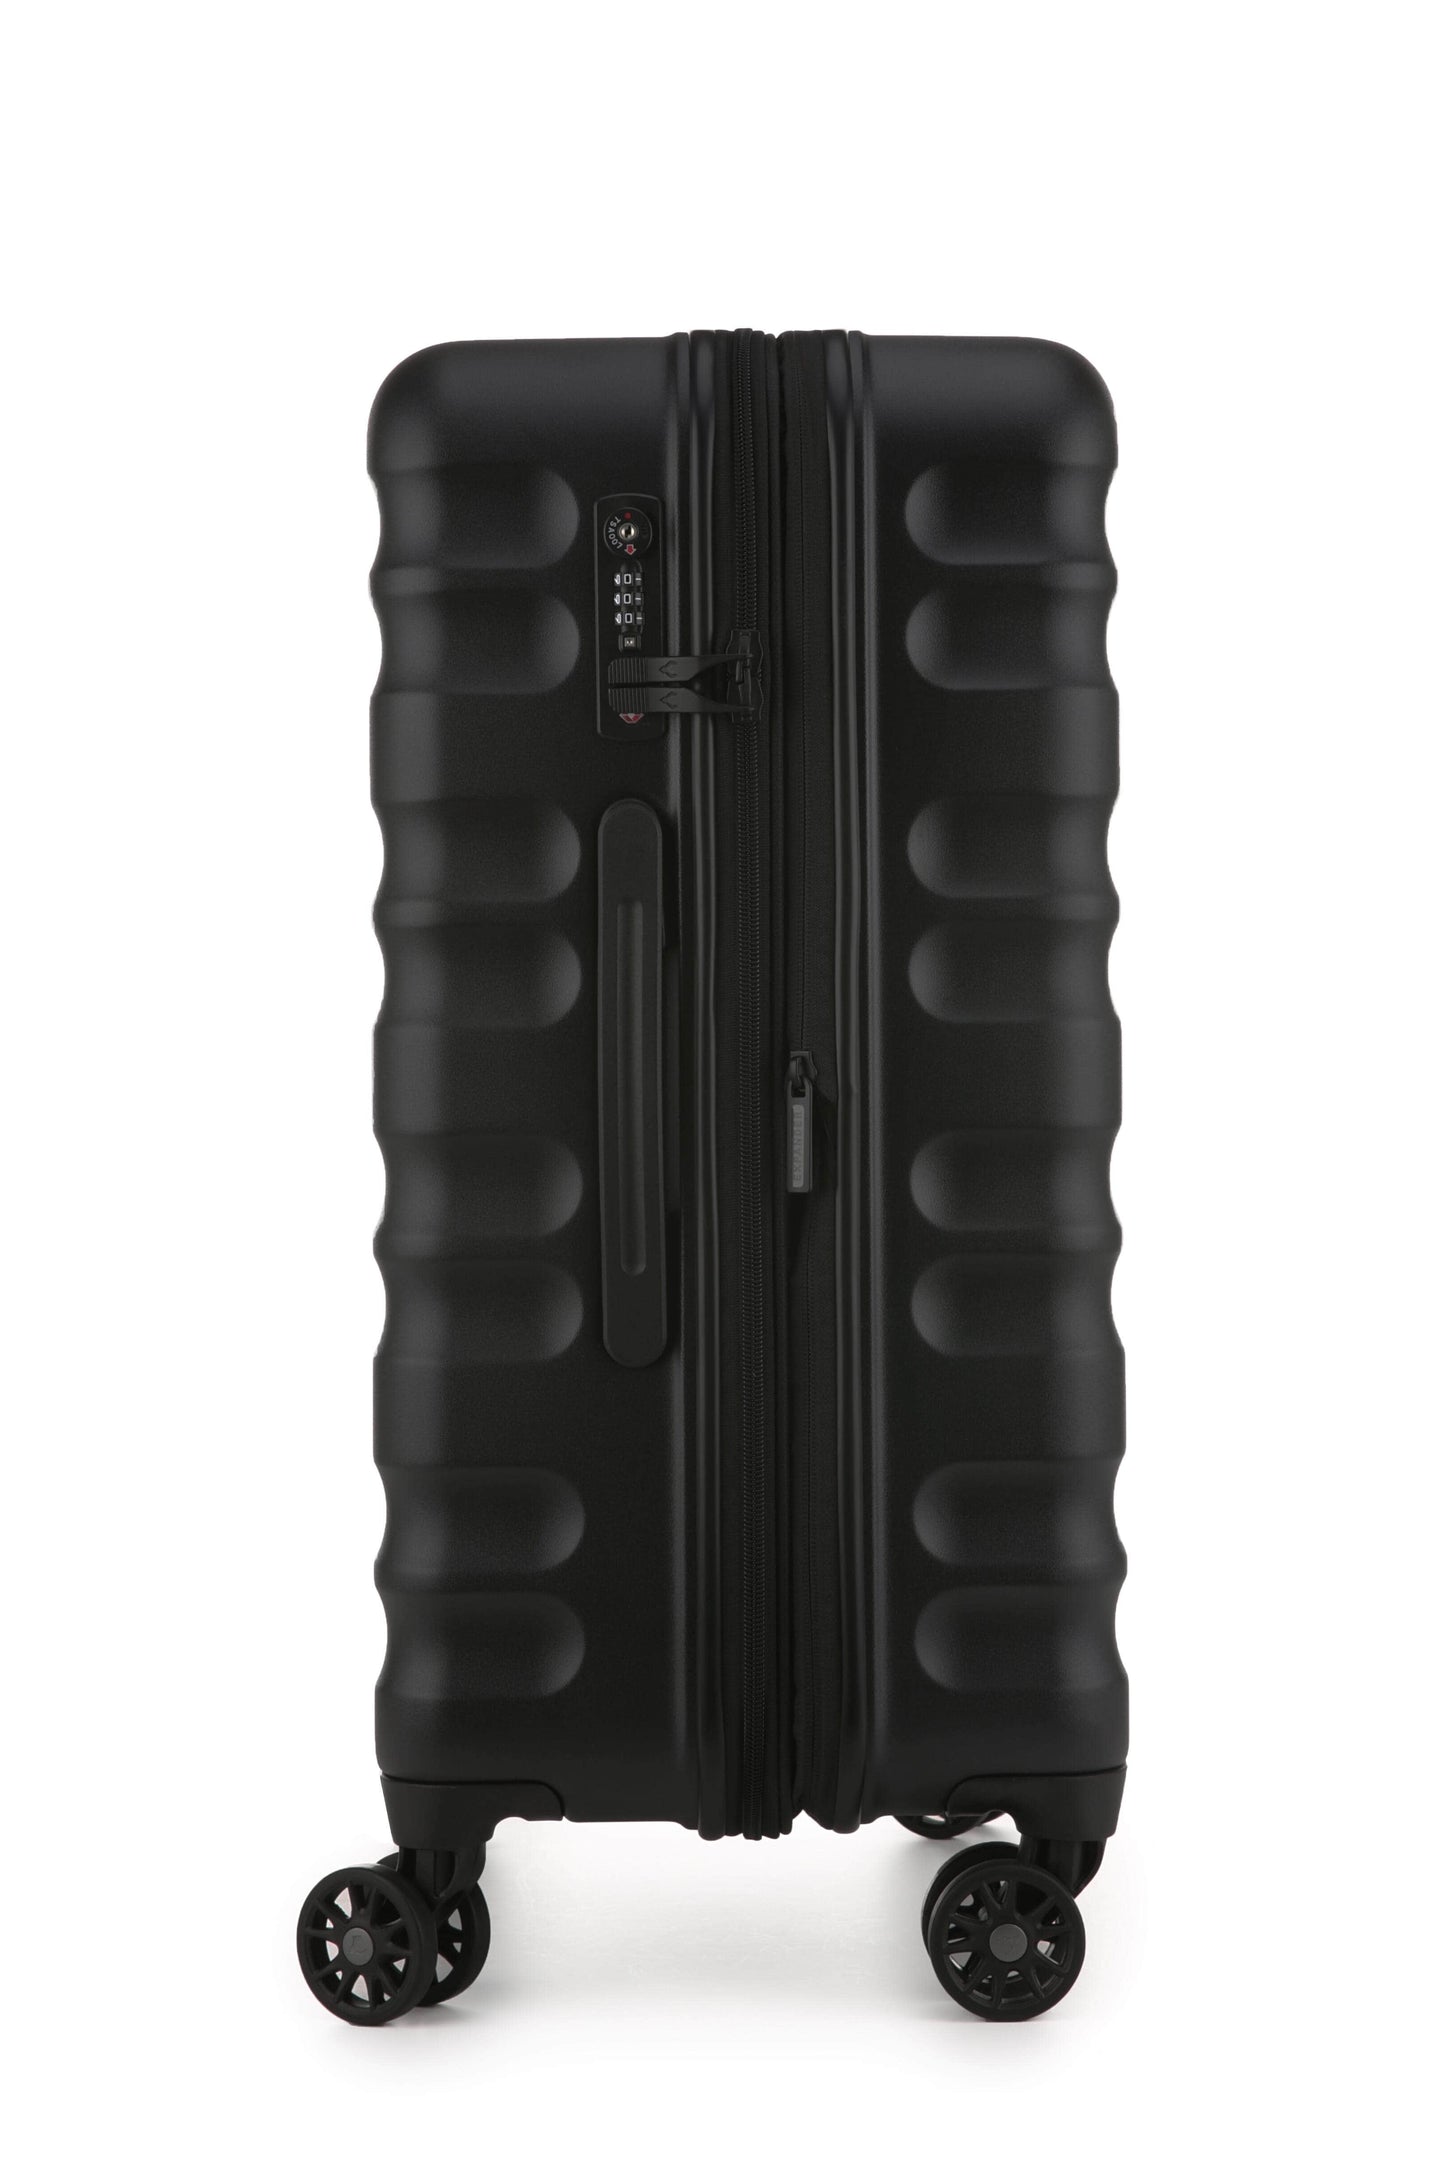 Antler Luggage -  Clifton medium in black - Hard Suitcases Clifton Medium Suitcase Black | Hard Suitcase | Antler UK